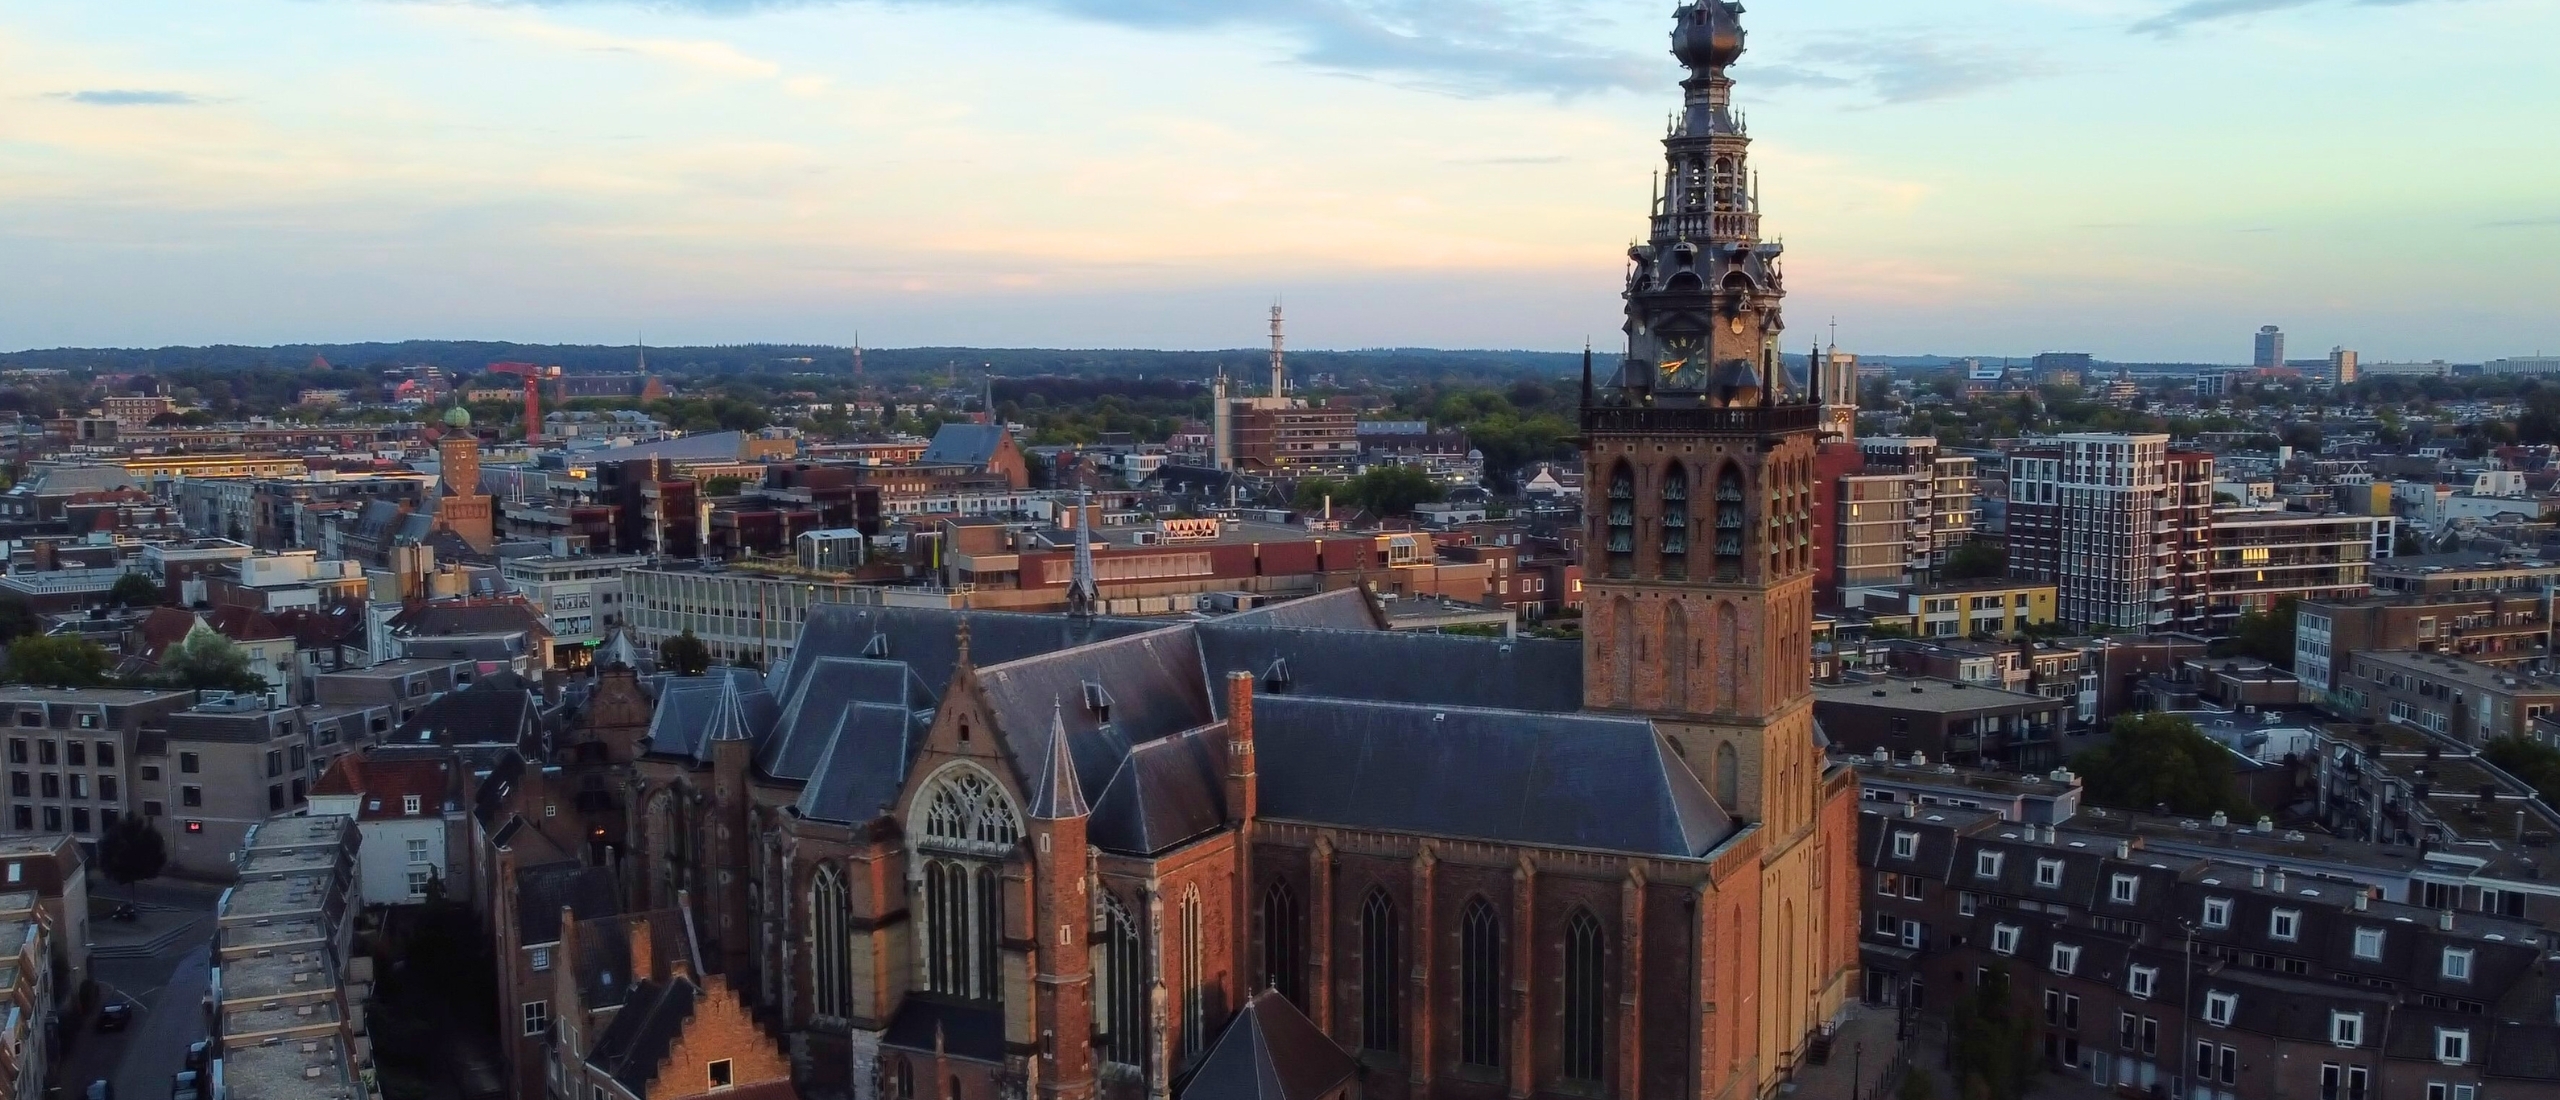 Nijmegen, de ideale stad voor een dagje of weekendje weg